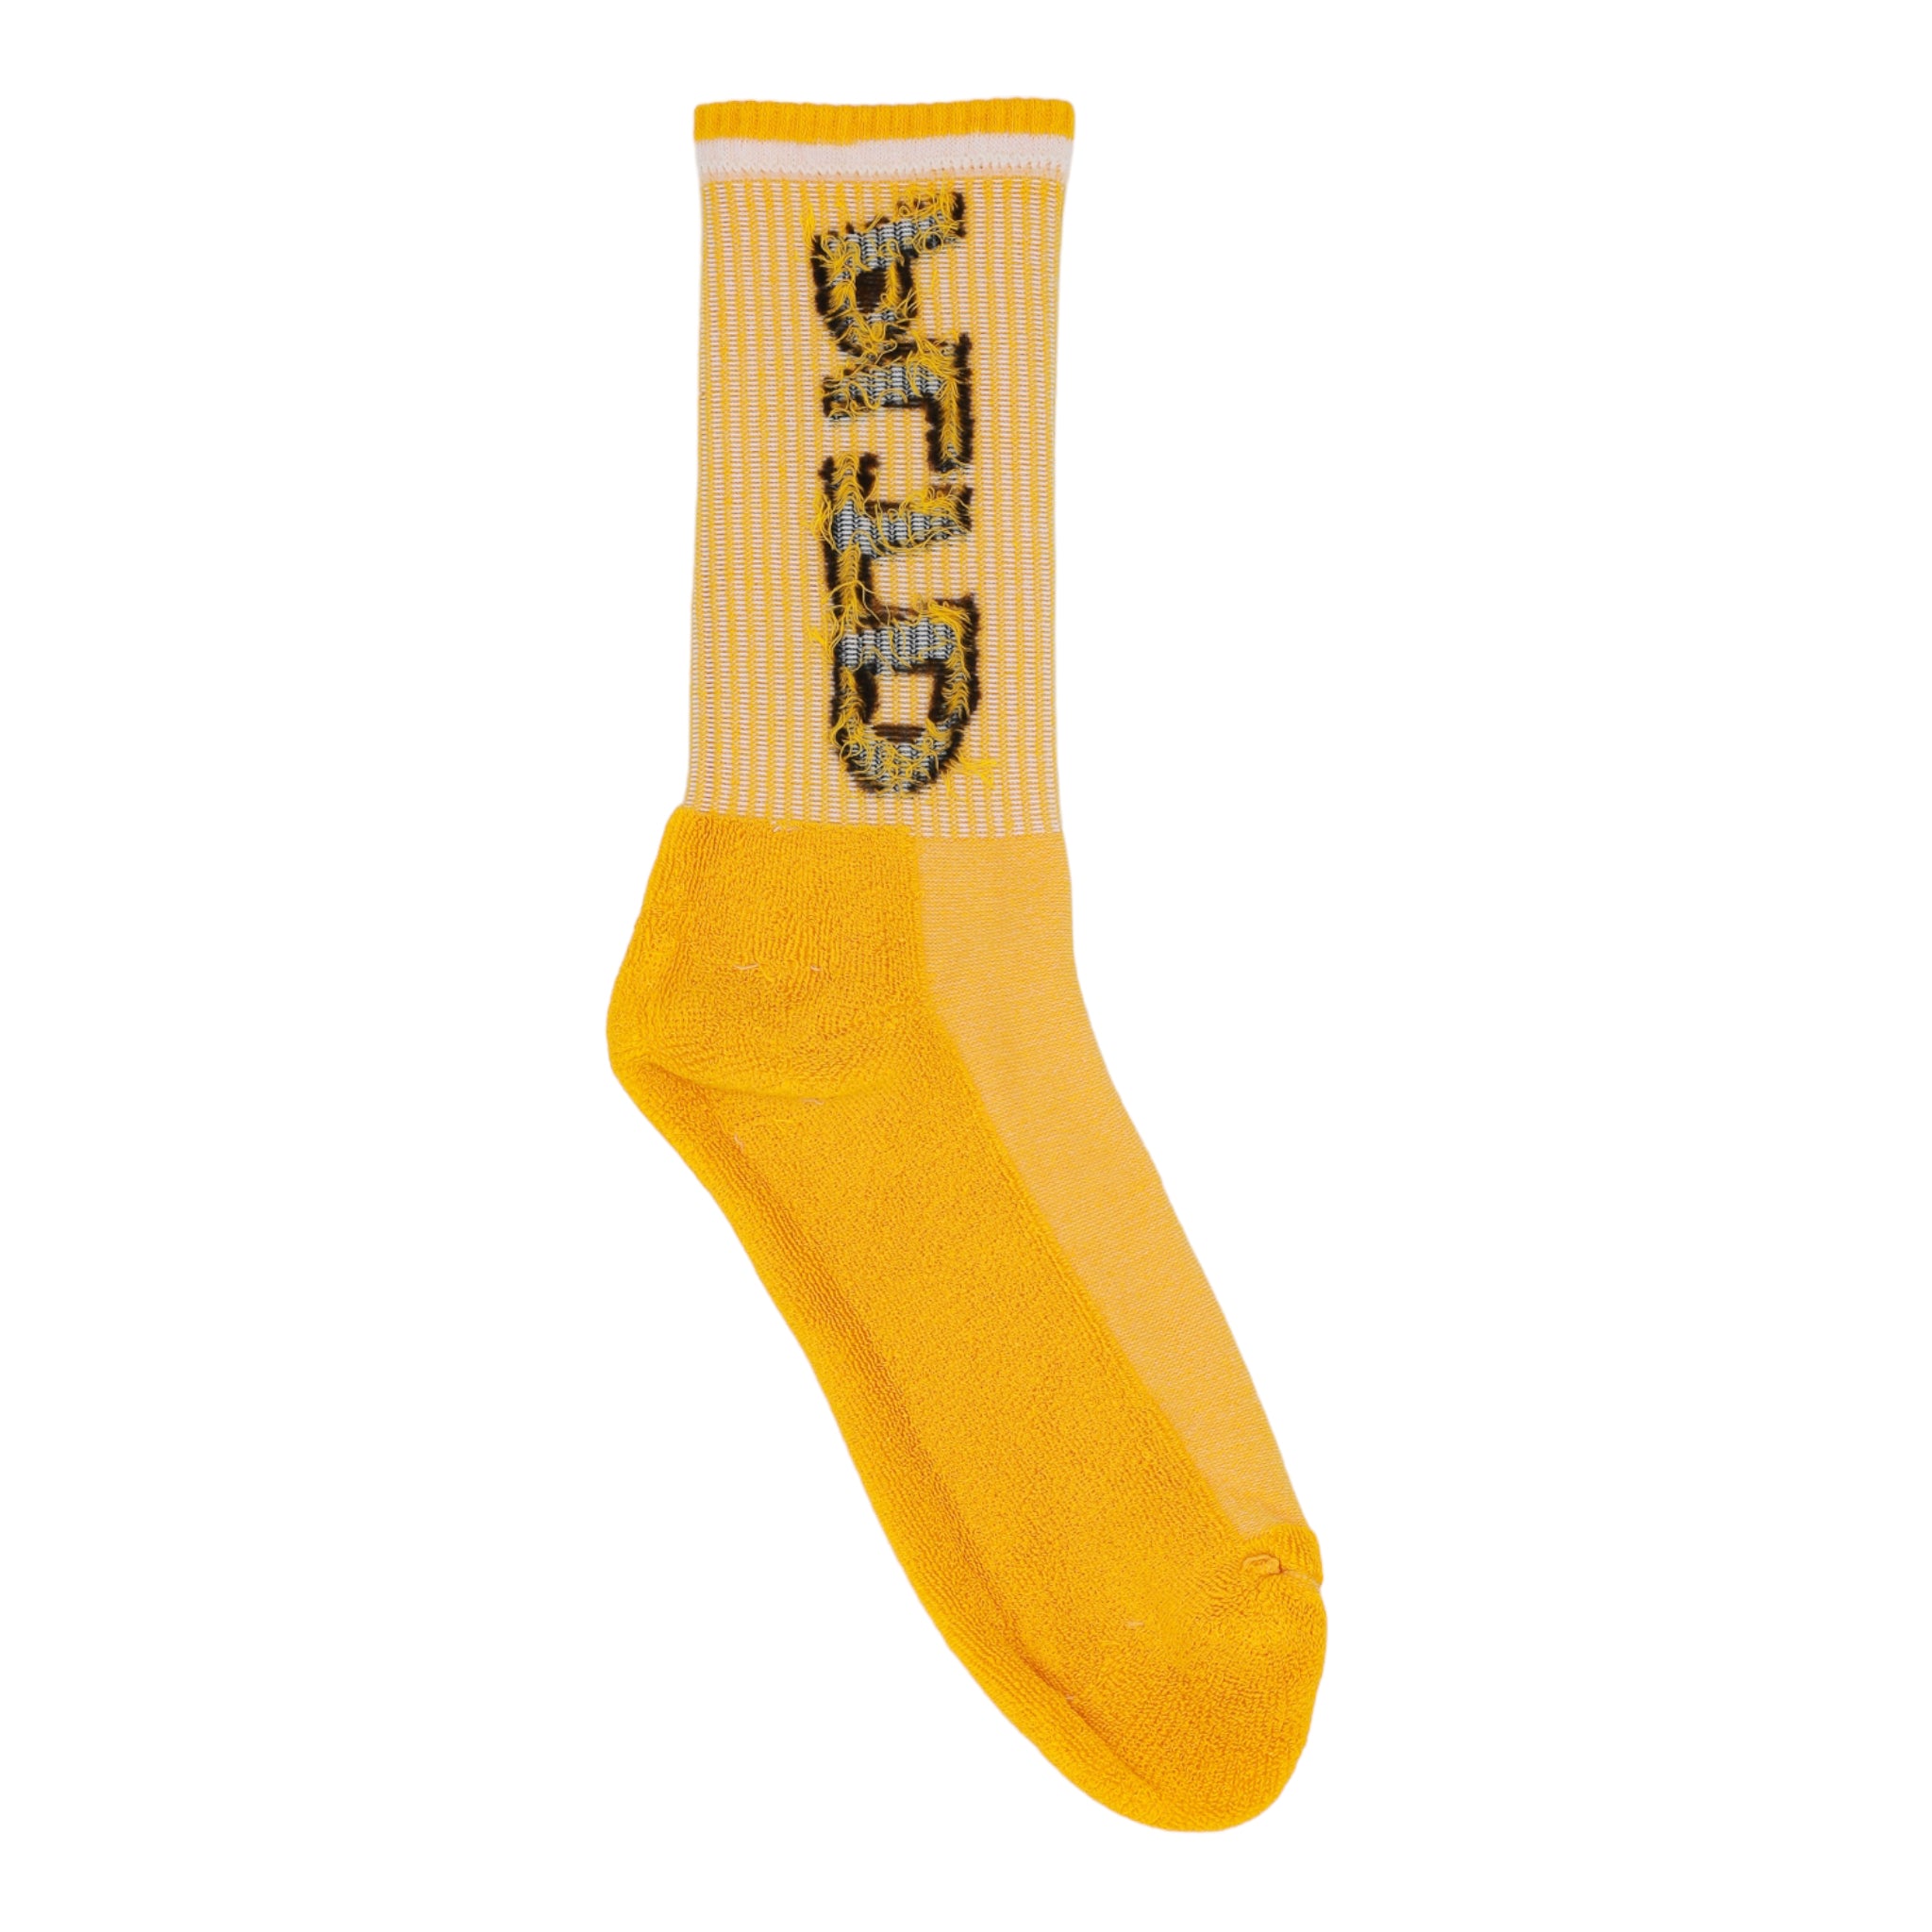 Team PLTD - Gold Socks